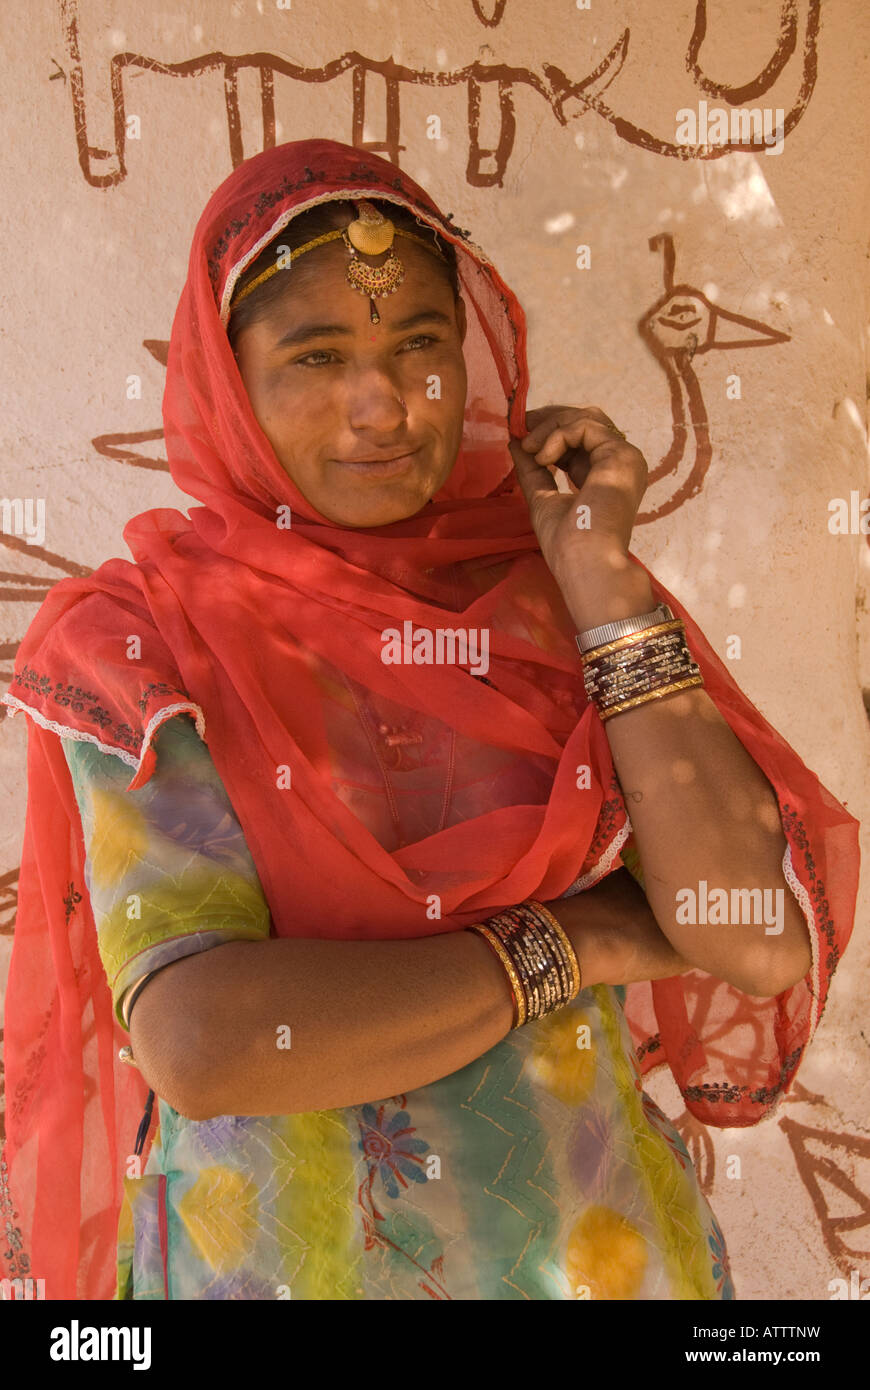 Bella giovane donna indiana adornata con gioielli e indossando un Sari davanti a una parete decorata con pittura primitiva Foto Stock